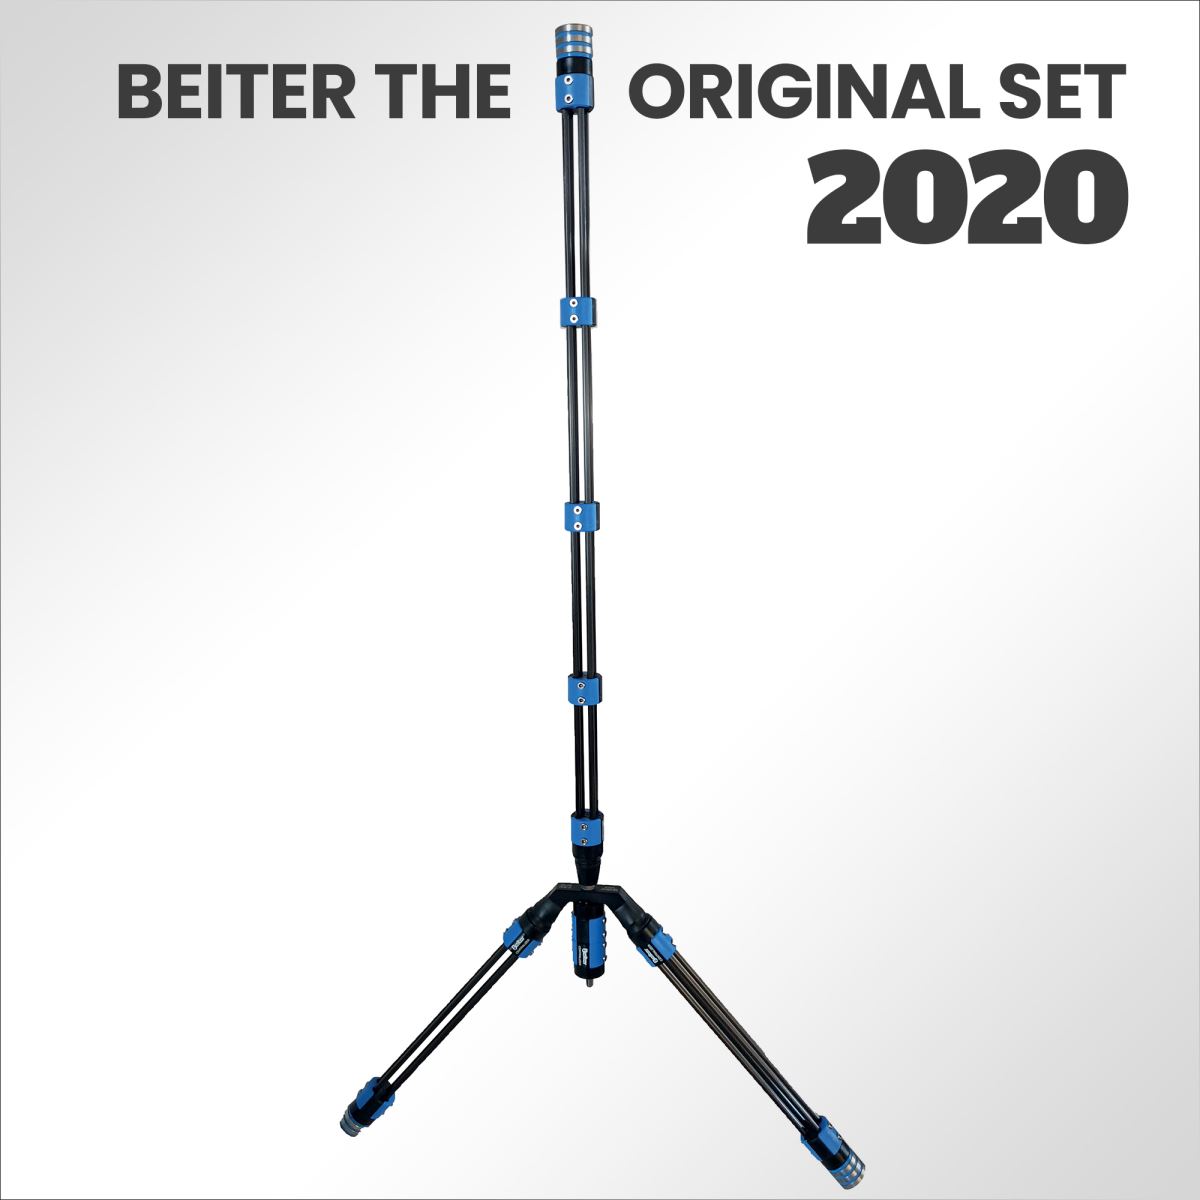 Scopri la nuova edizione Beiter The Original con il sistema V-Lock 2020